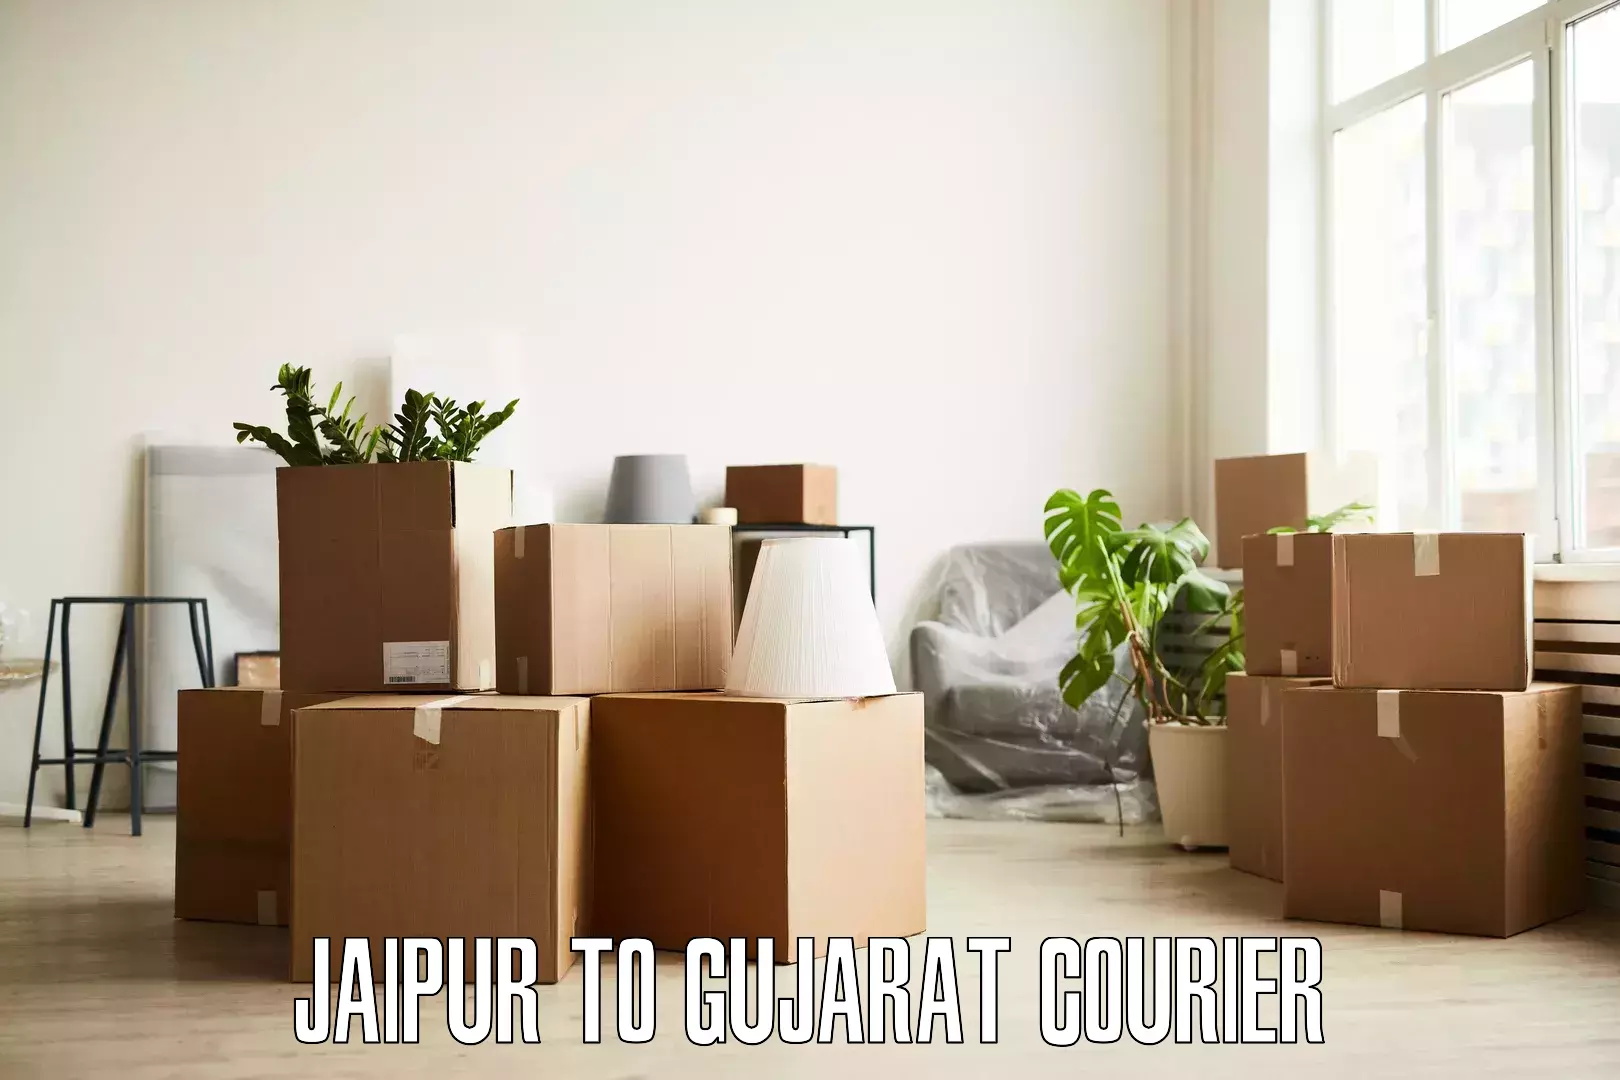 Furniture transport and storage Jaipur to Jasdan